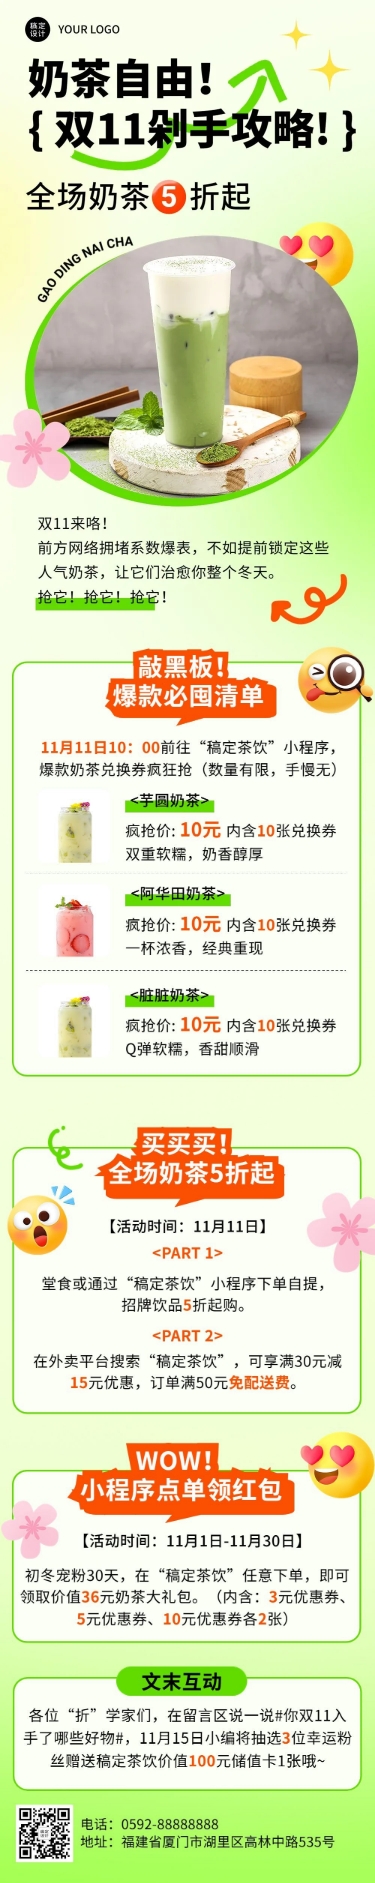 餐饮美食双十一奶茶饮品促销活动文章长图